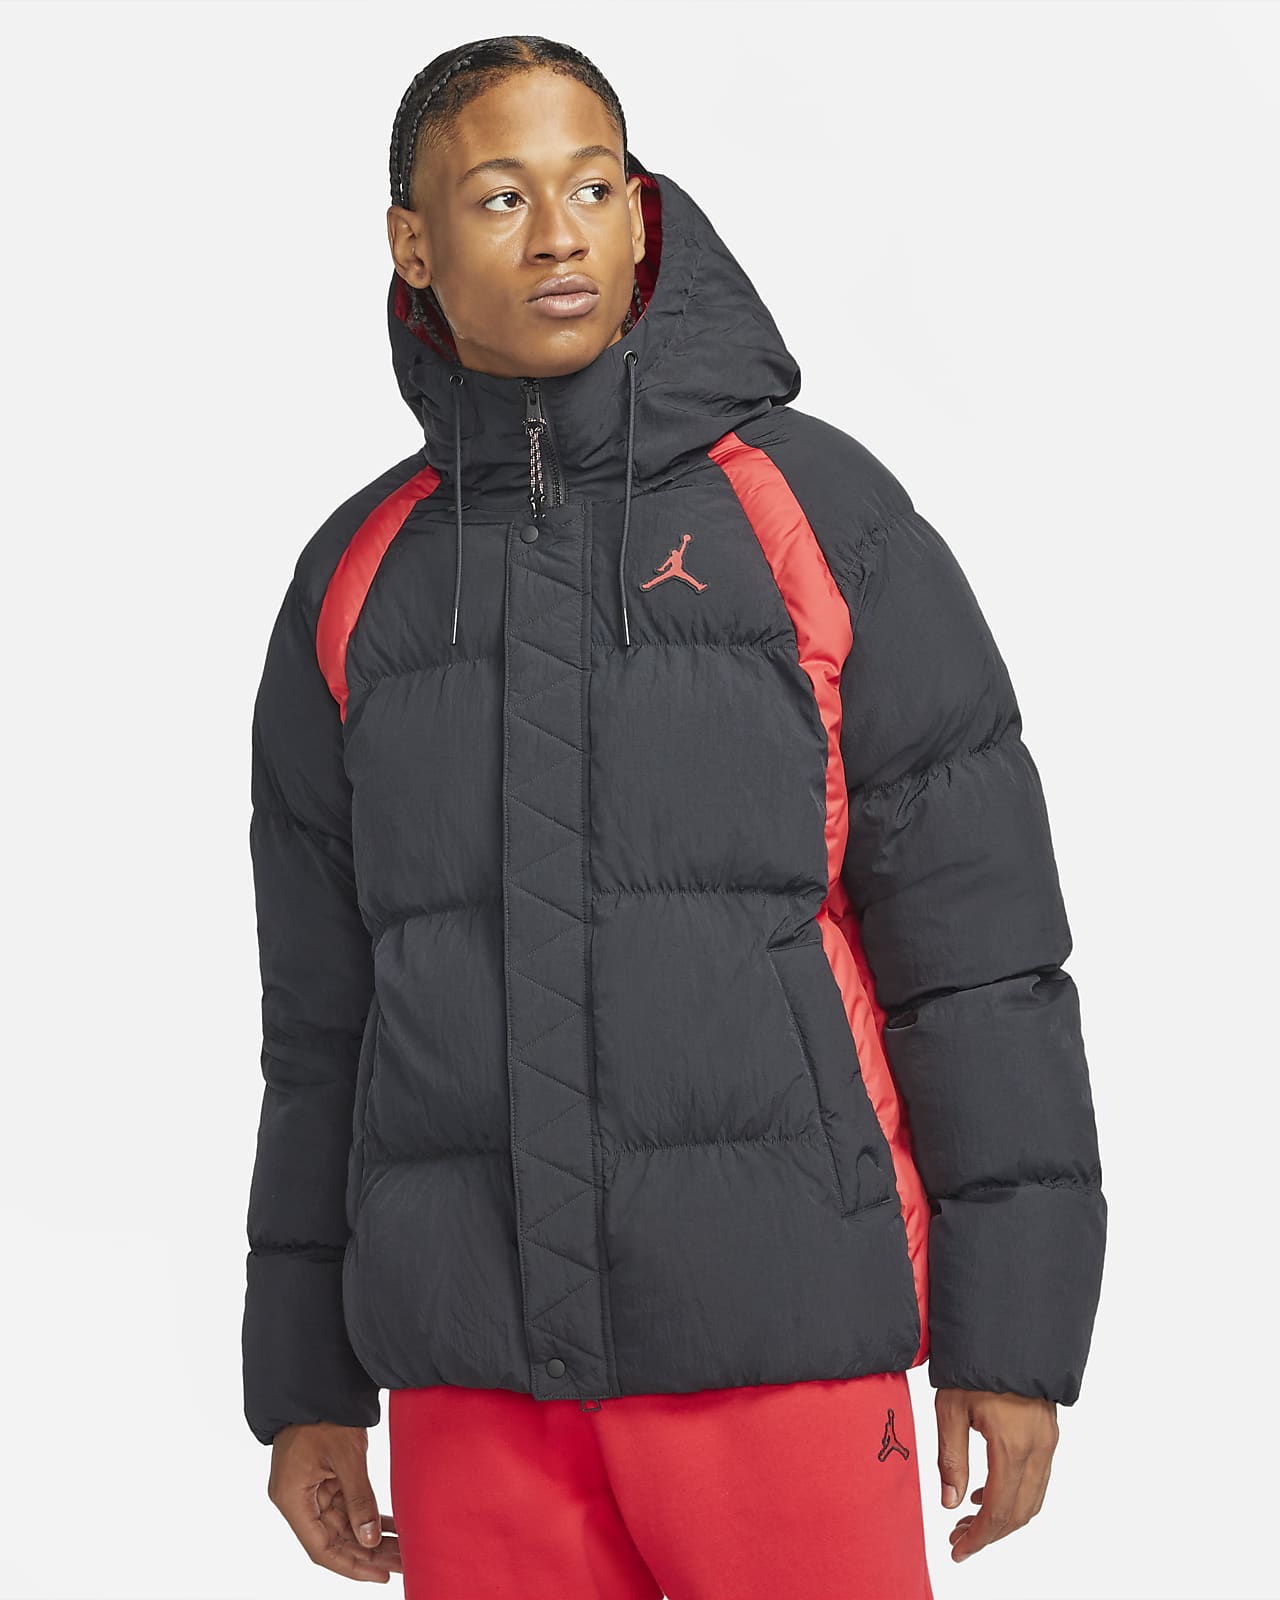 Jordan Essentials Puffer-Jacke für Herren